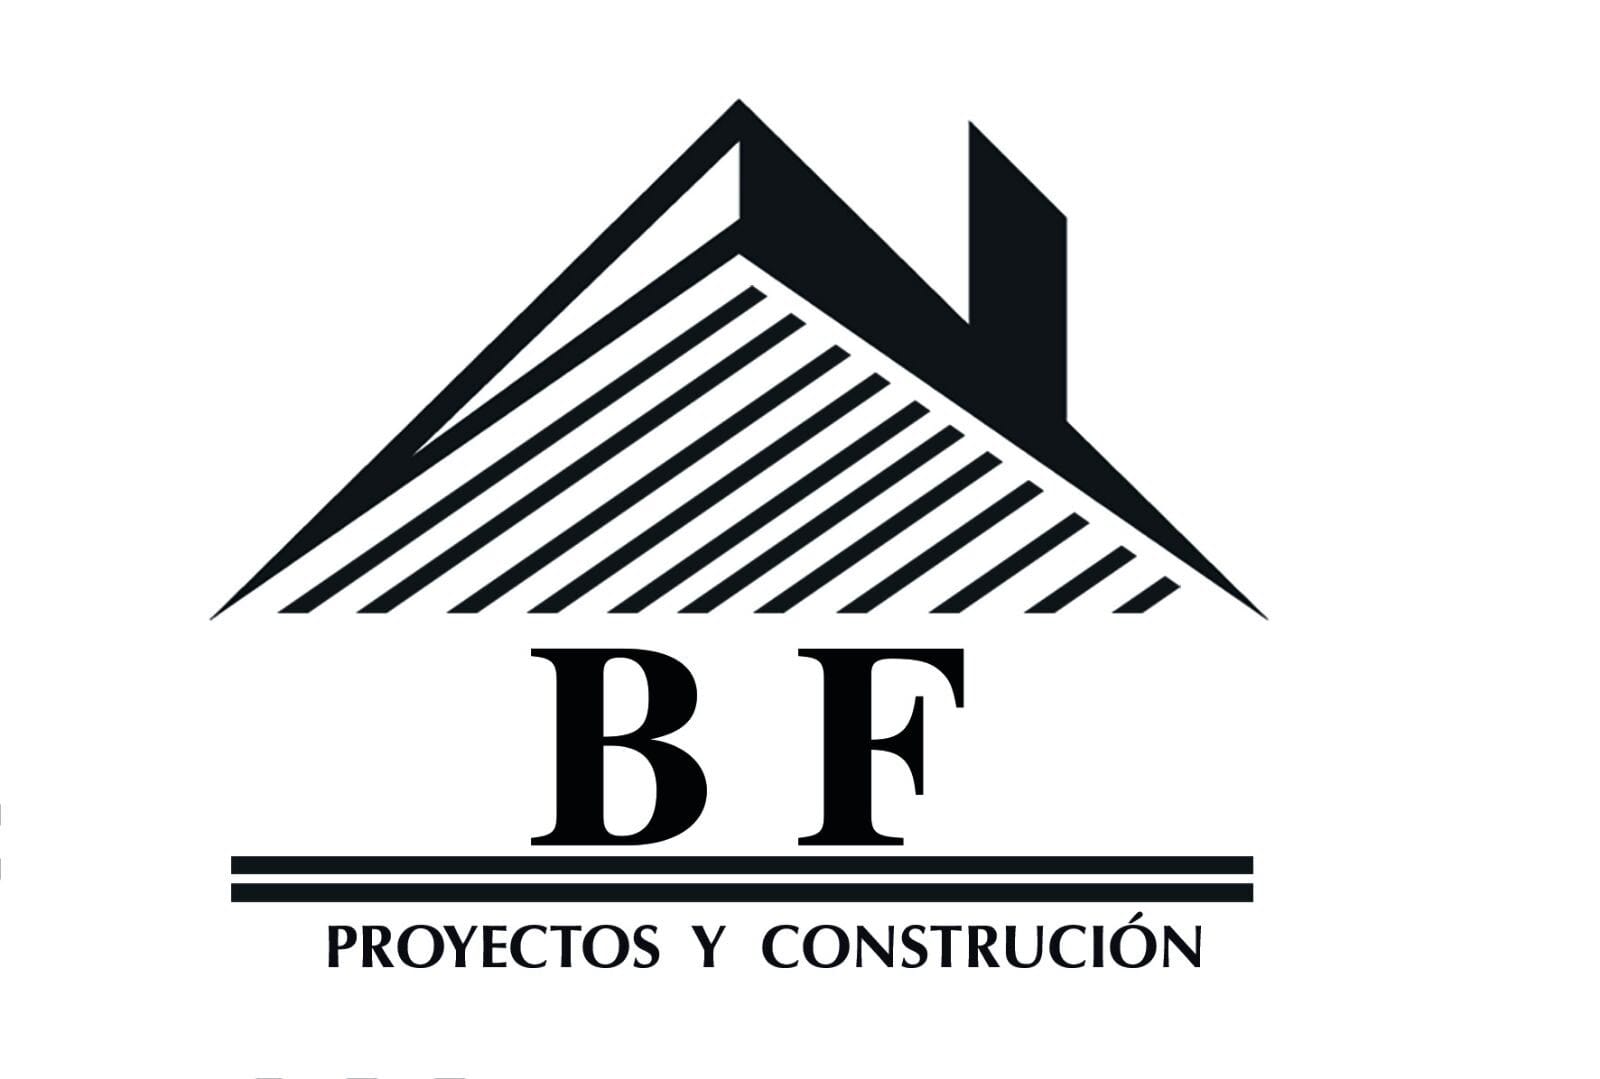 Proyecto y Construcción